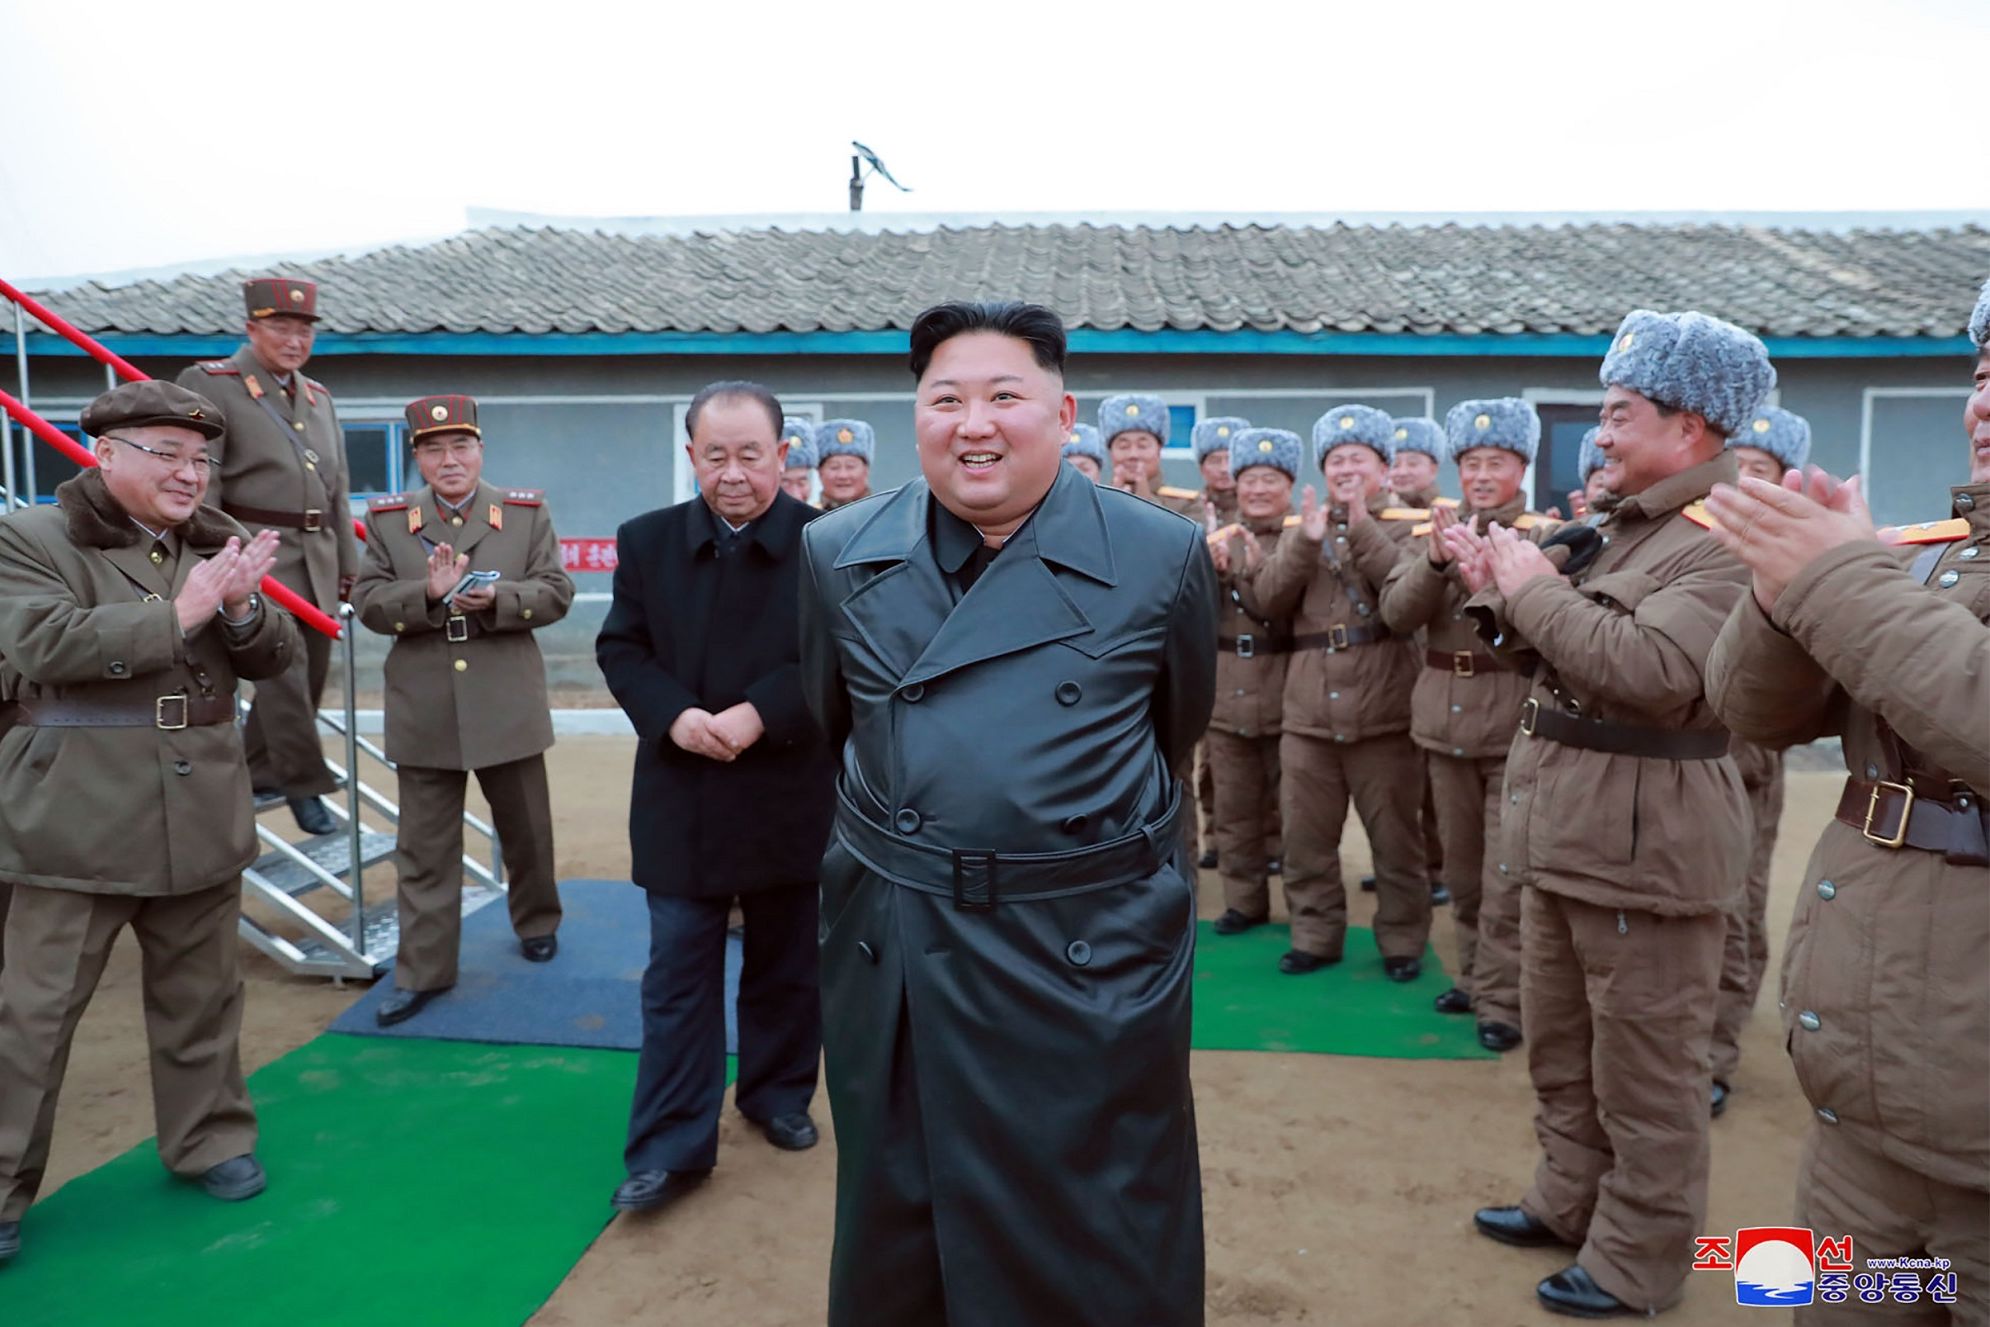 Sambil Tersenyum, Kim Jong Un Awasi Uji Coba Senjata Korea Utara